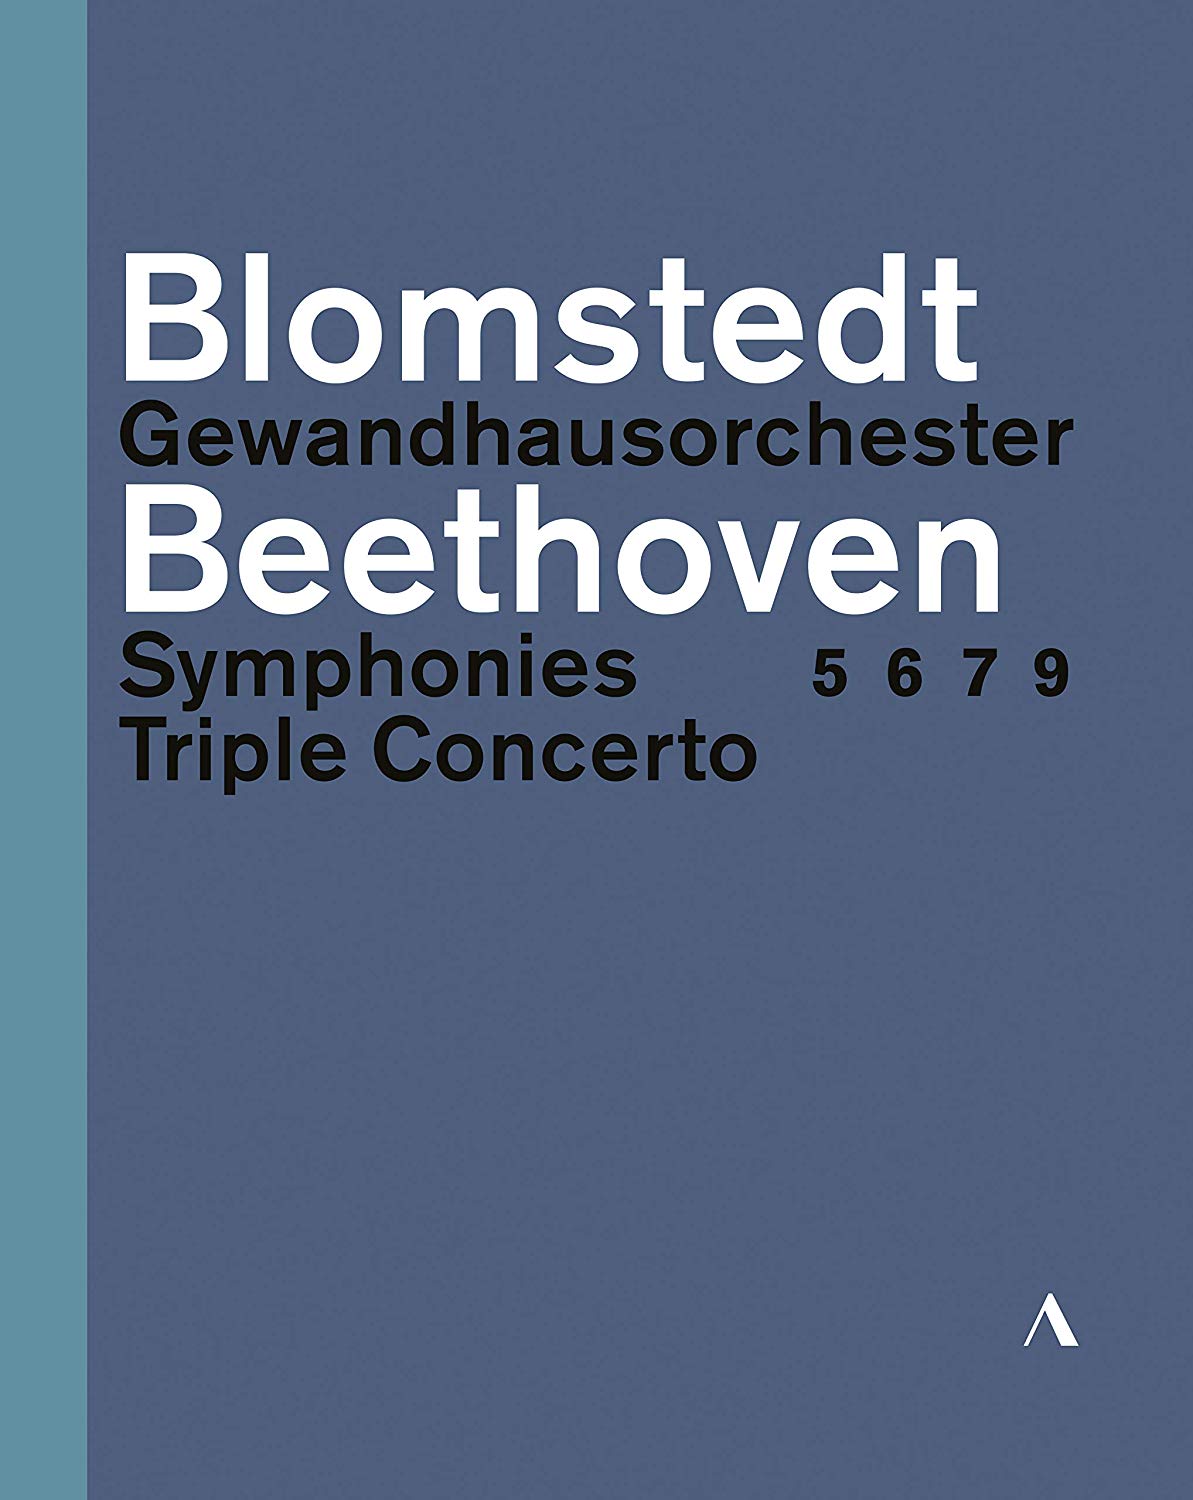 Music Dvd Ludwig Van Beethoven - Symphonies 5, 6, 7, 9 & Triple Concerto (3 Dvd) NUOVO SIGILLATO, EDIZIONE DEL 16/08/2019 SUBITO DISPONIBILE